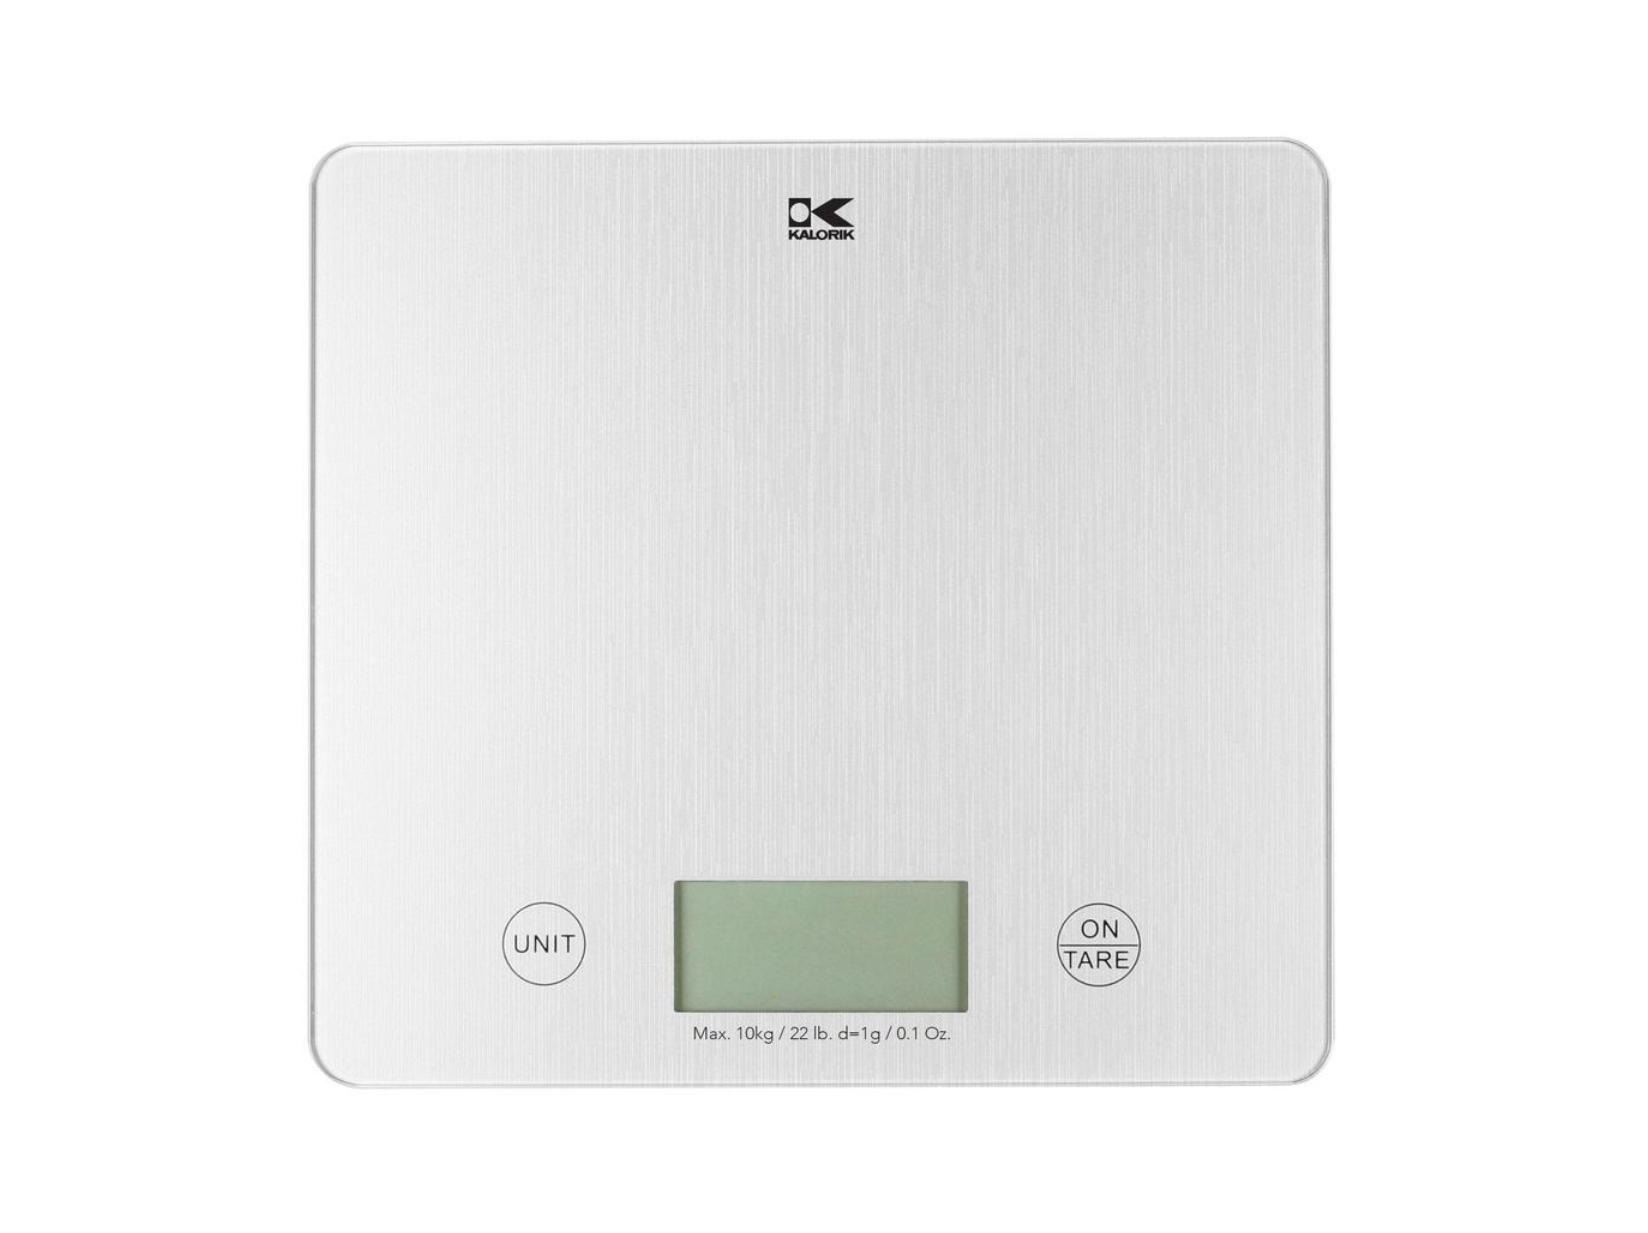 Kalorik-XL-Digital-Kitchen-Scale_200401_221213